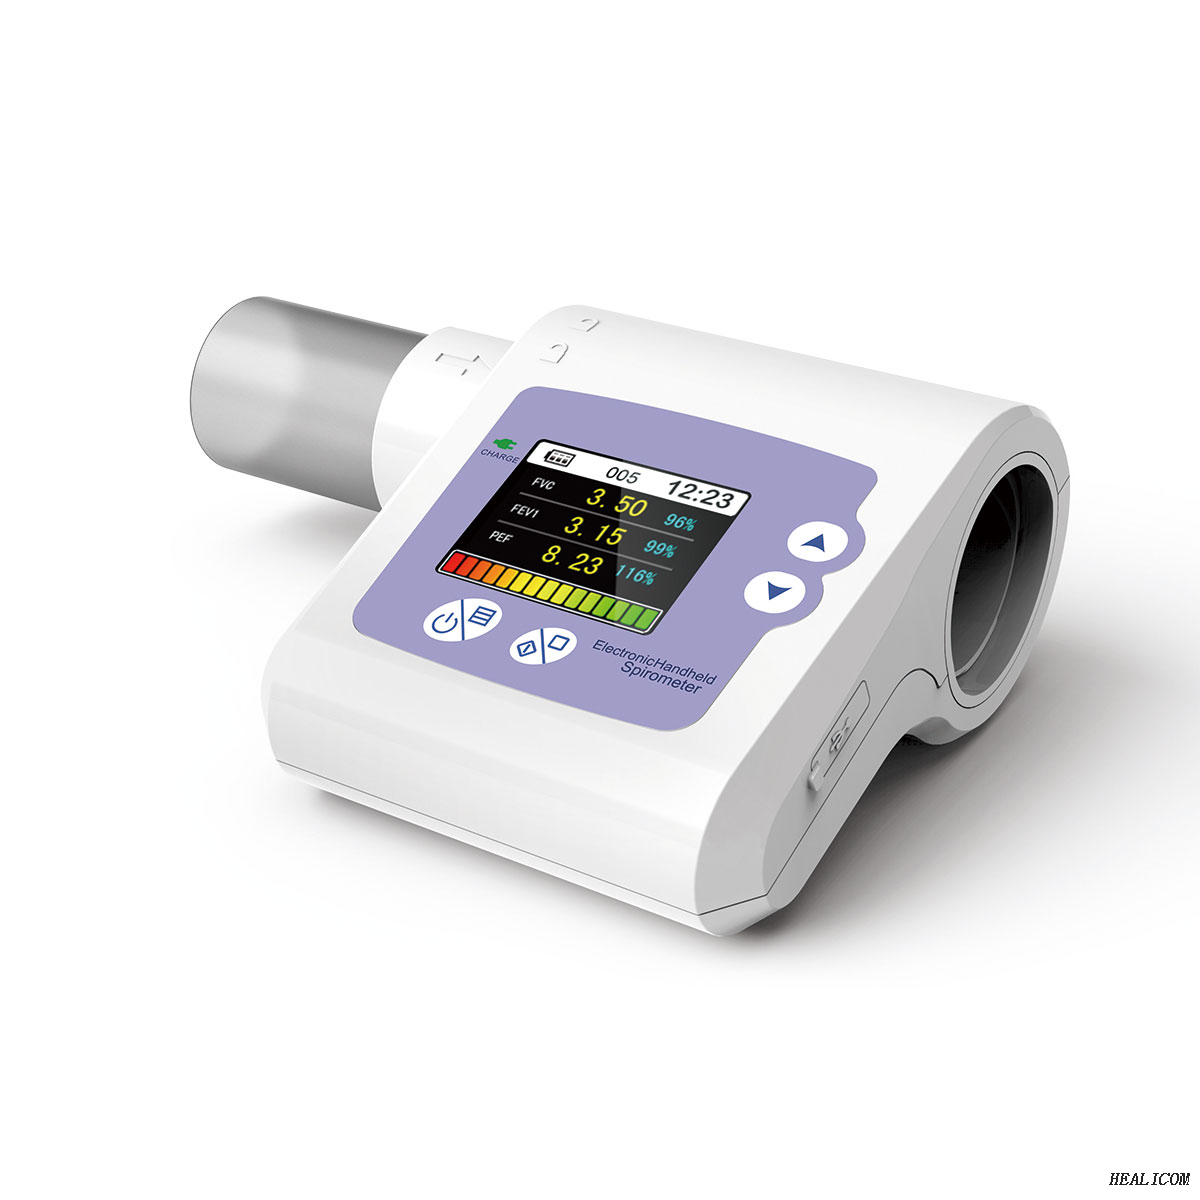 Spirometro portatile medico portatile portatile HSP10 di prezzo più economico con CE ISO